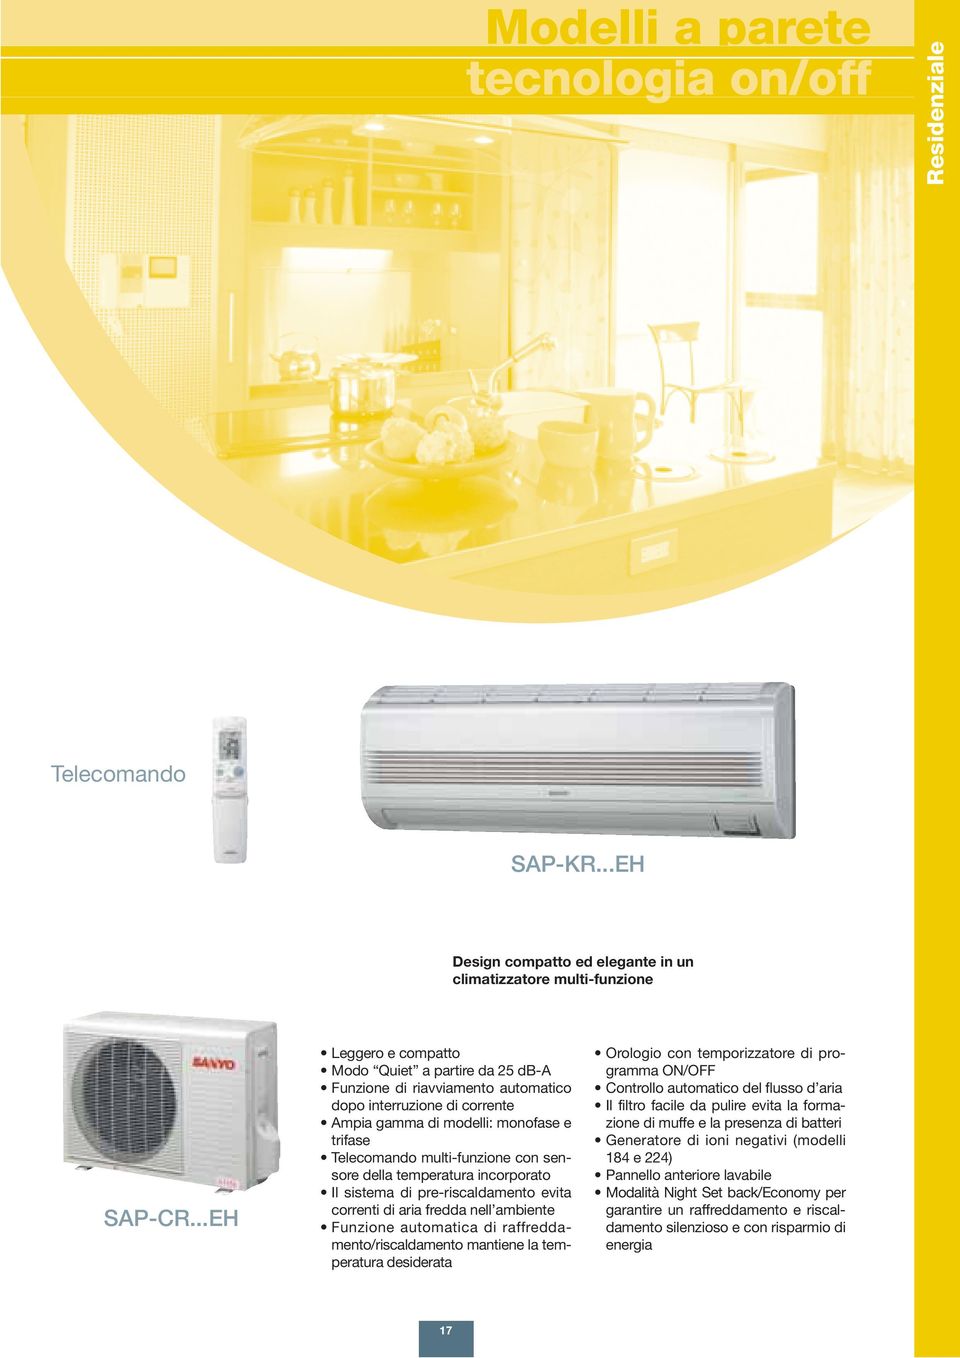 sensore della temperatura incorporato Il sistema di pre-riscaldamento evita correnti di aria fredda nell ambiente Funzione automatica di raffreddamento/riscaldamento mantiene la temperatura